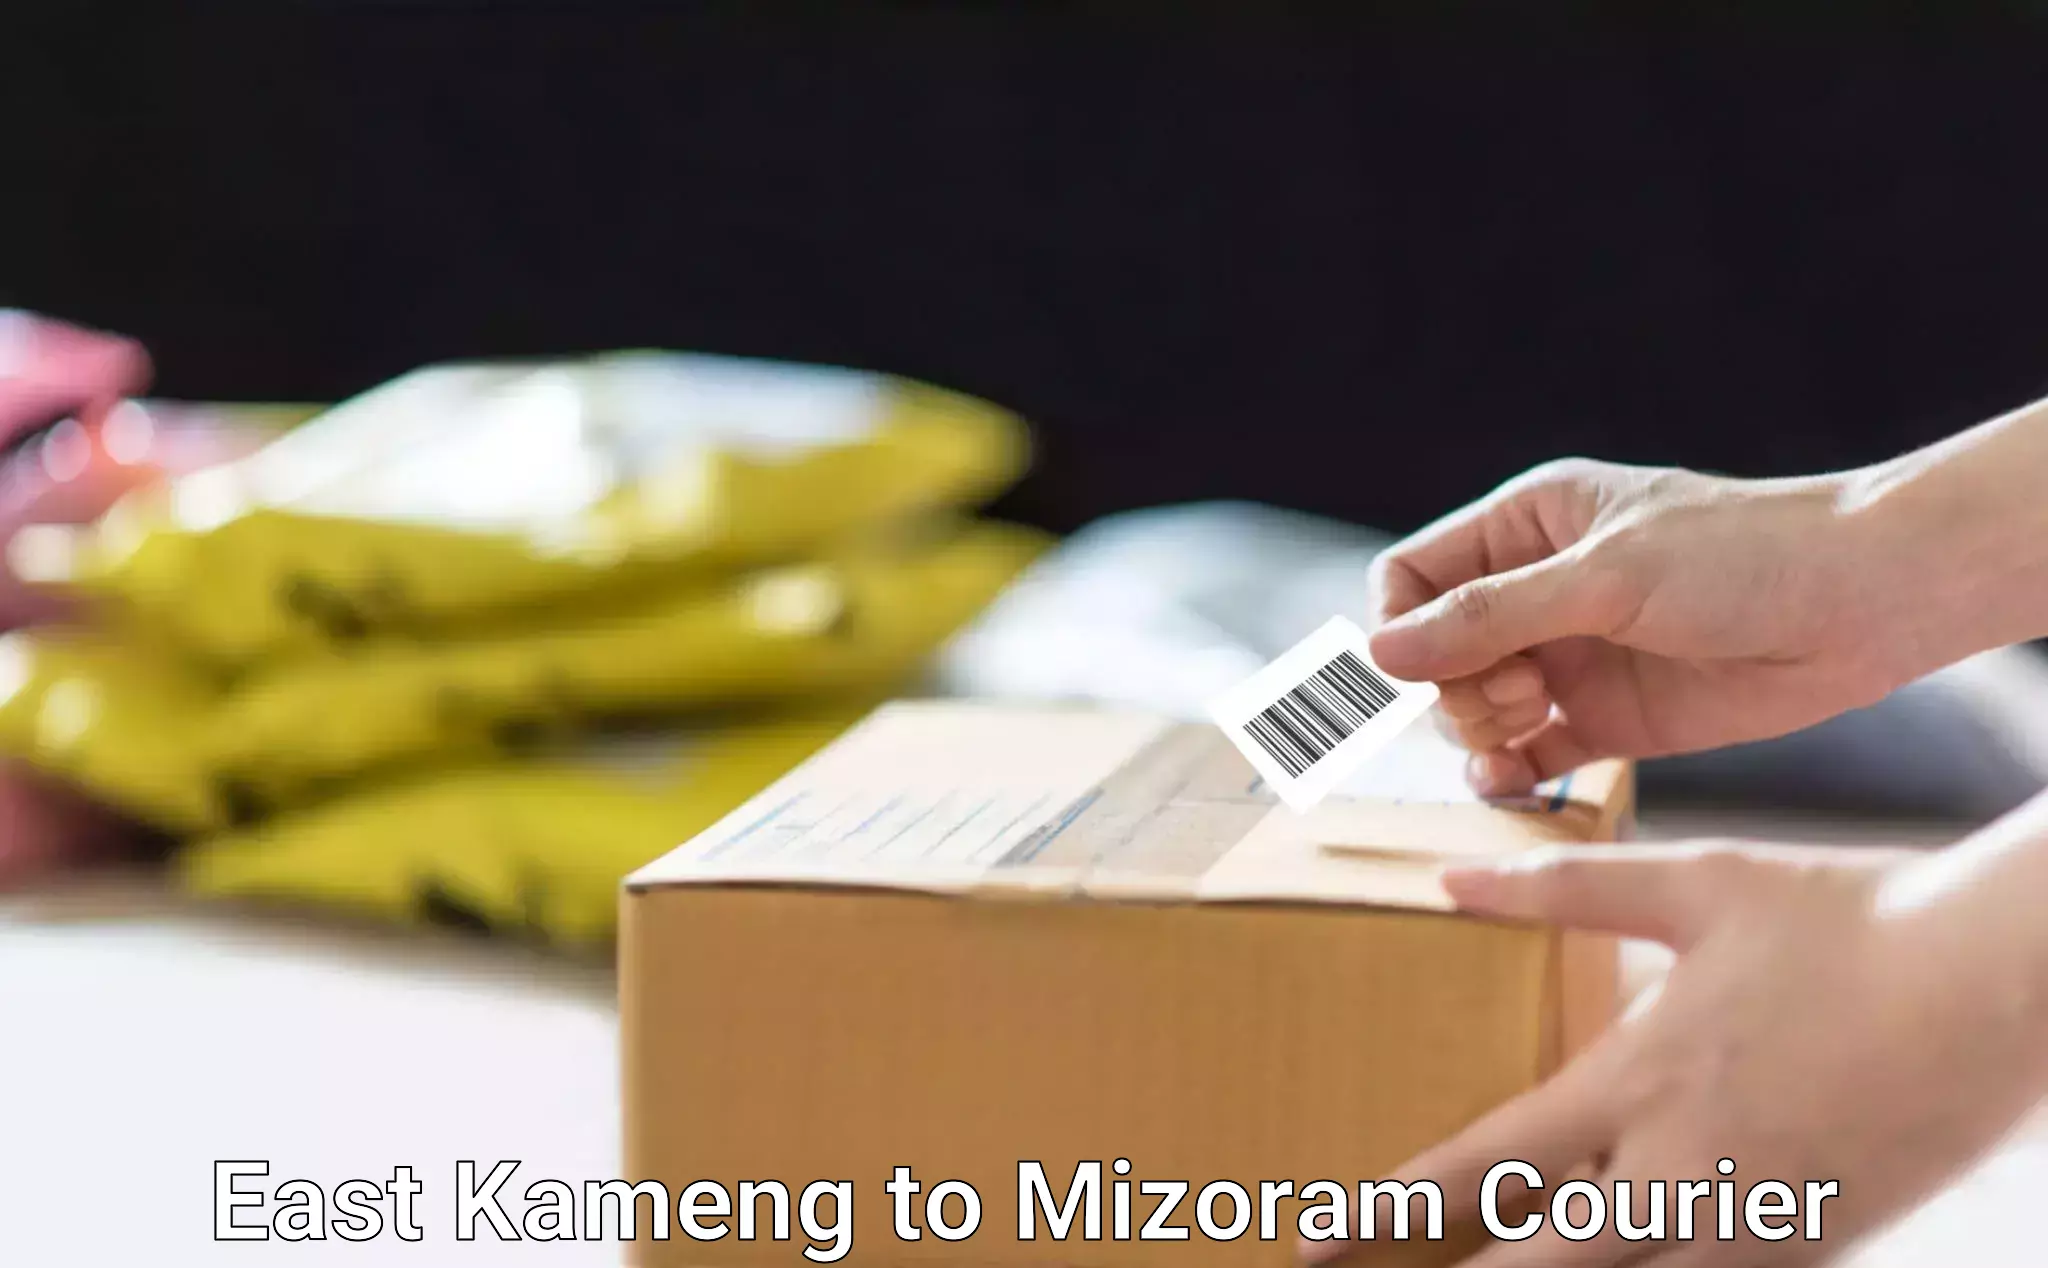 Express courier facilities East Kameng to Mizoram